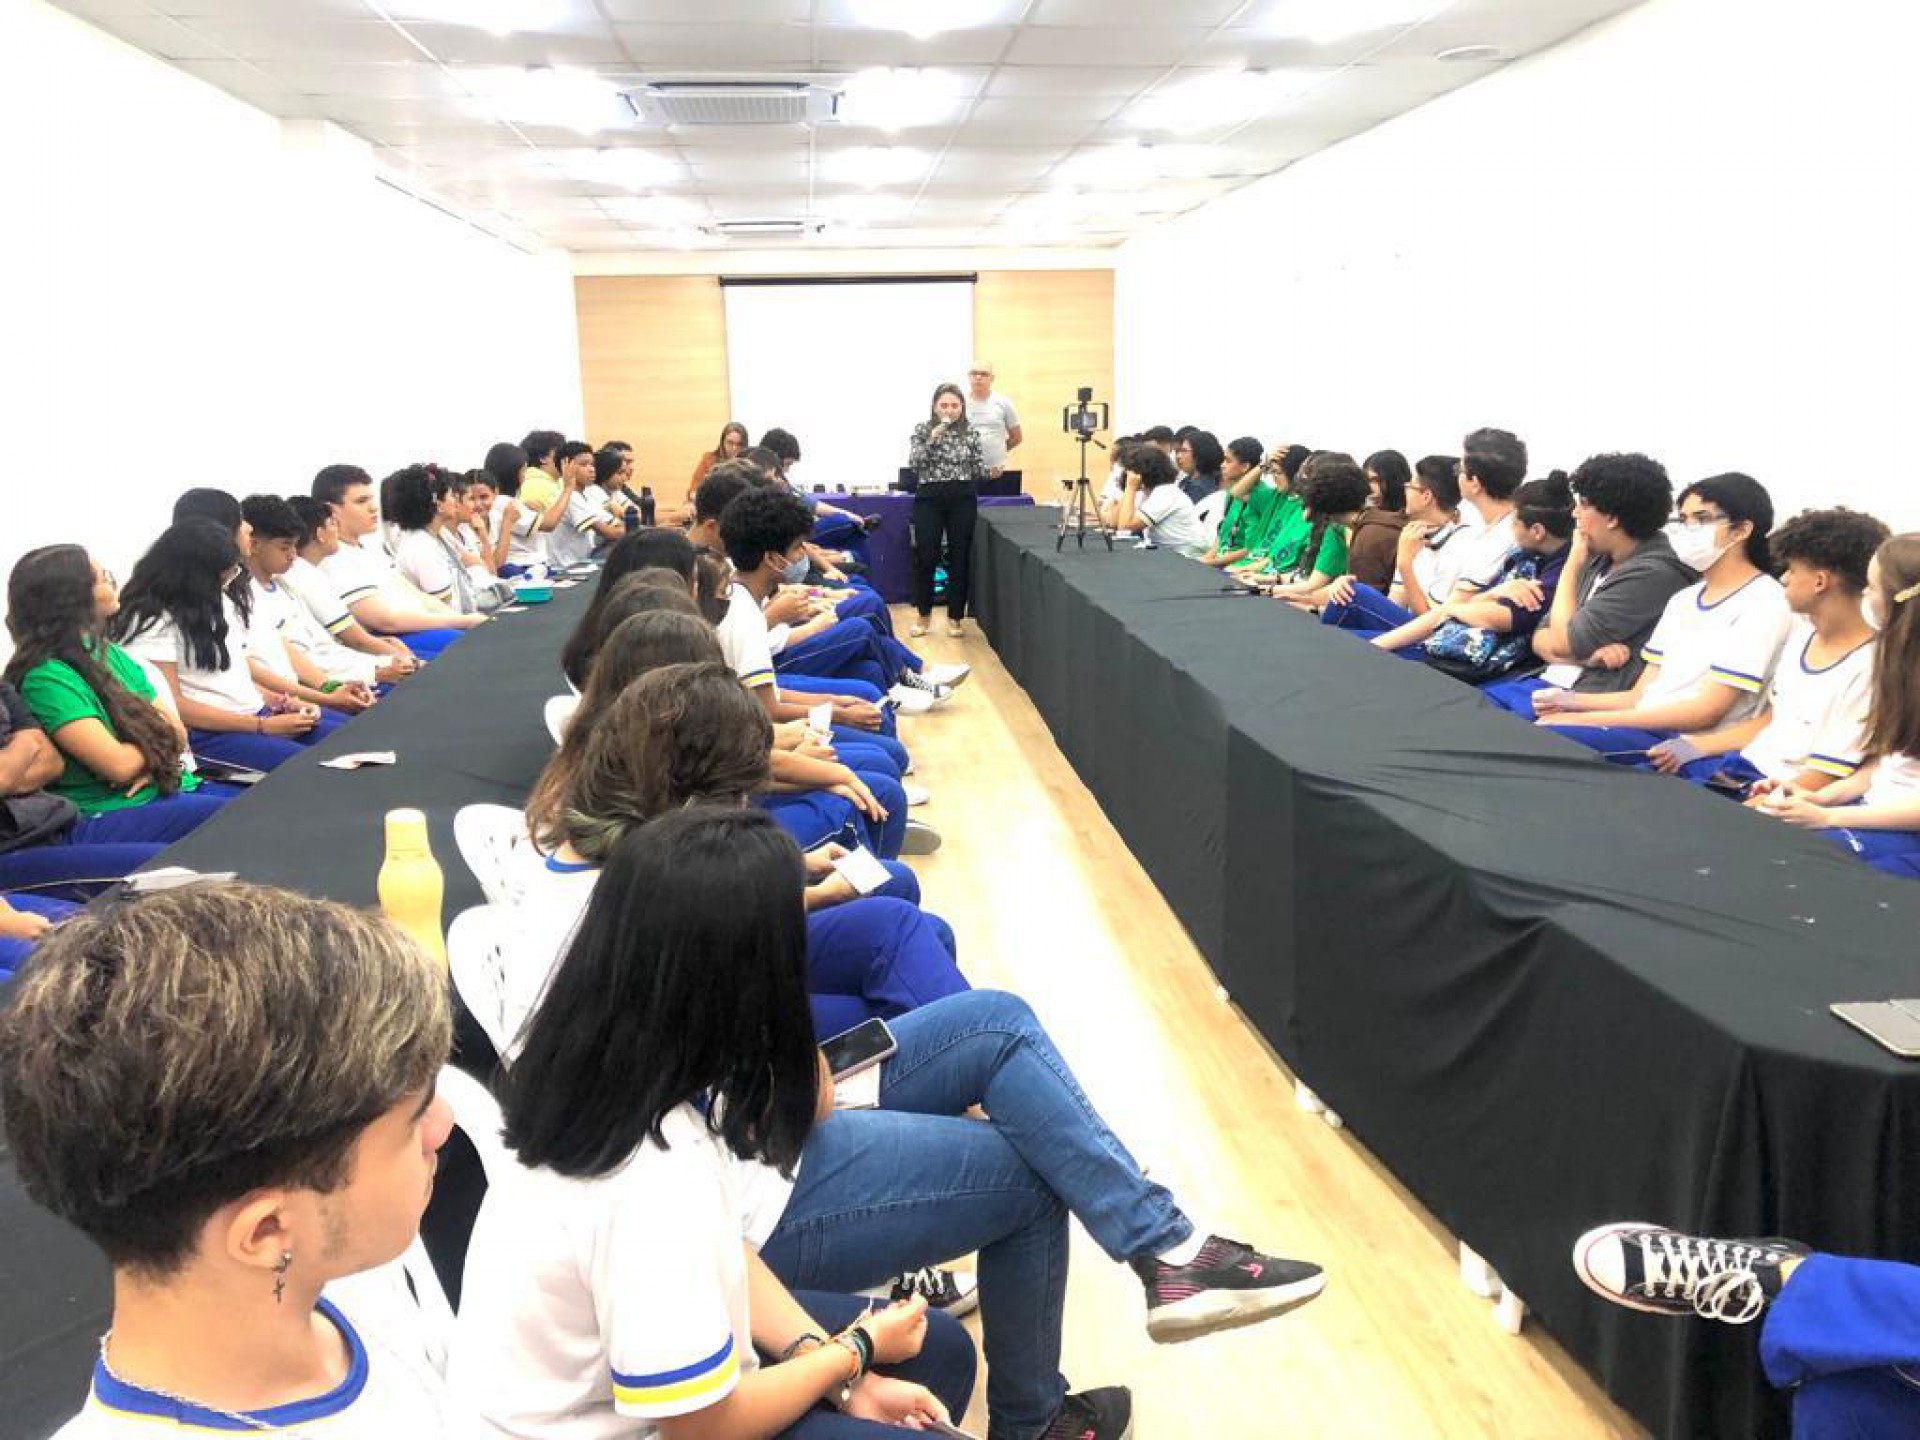 Escola Sesc Educar II reuniu alunos para apresentar a nova proposta de ensino médio, com dois cursos profissionalizantes (Foto: Divulgação)